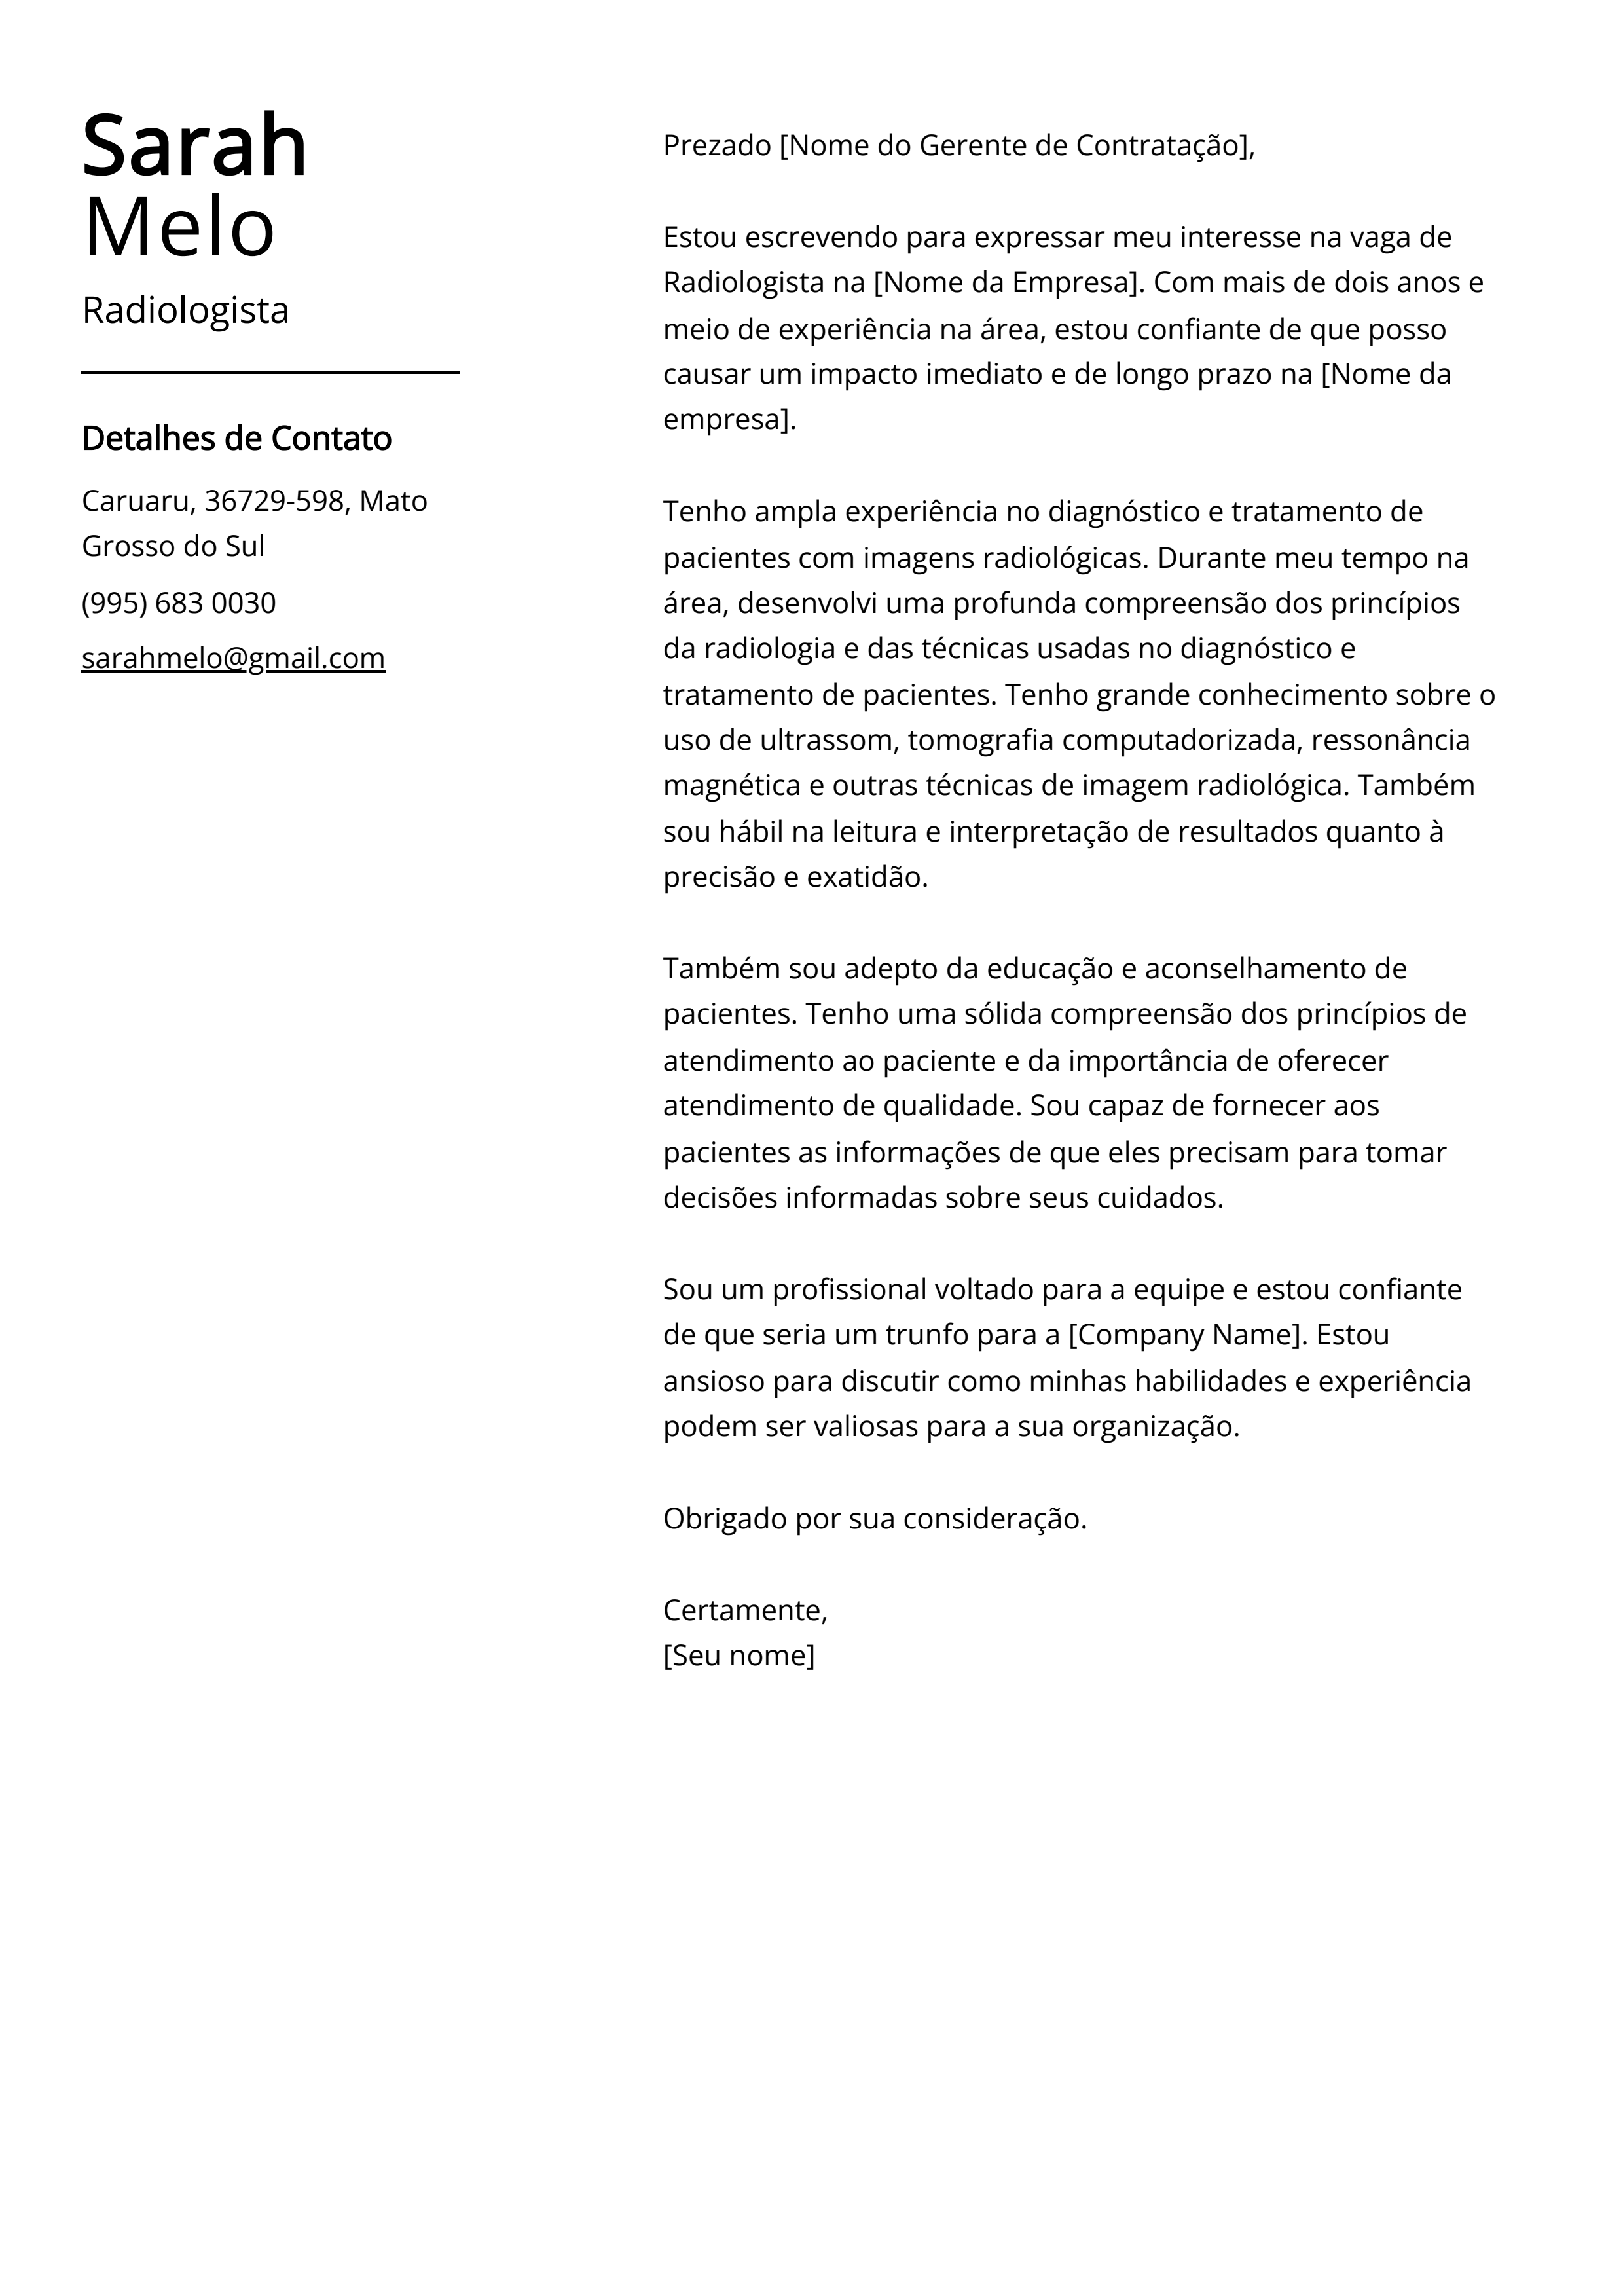 Exemplo de carta de apresentação de Radiologista.